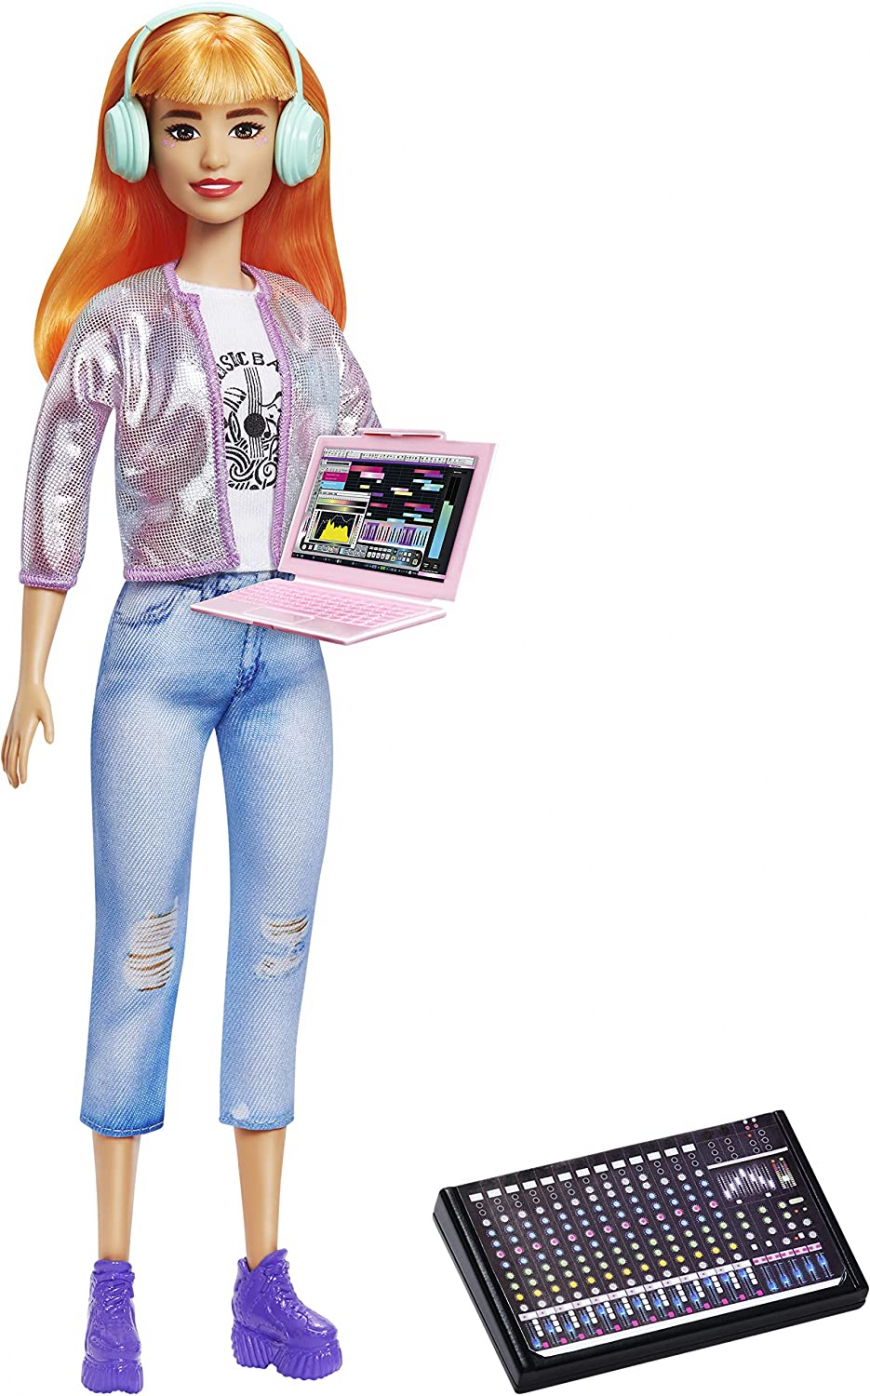 Barbie Career of The Year GTN79 doll